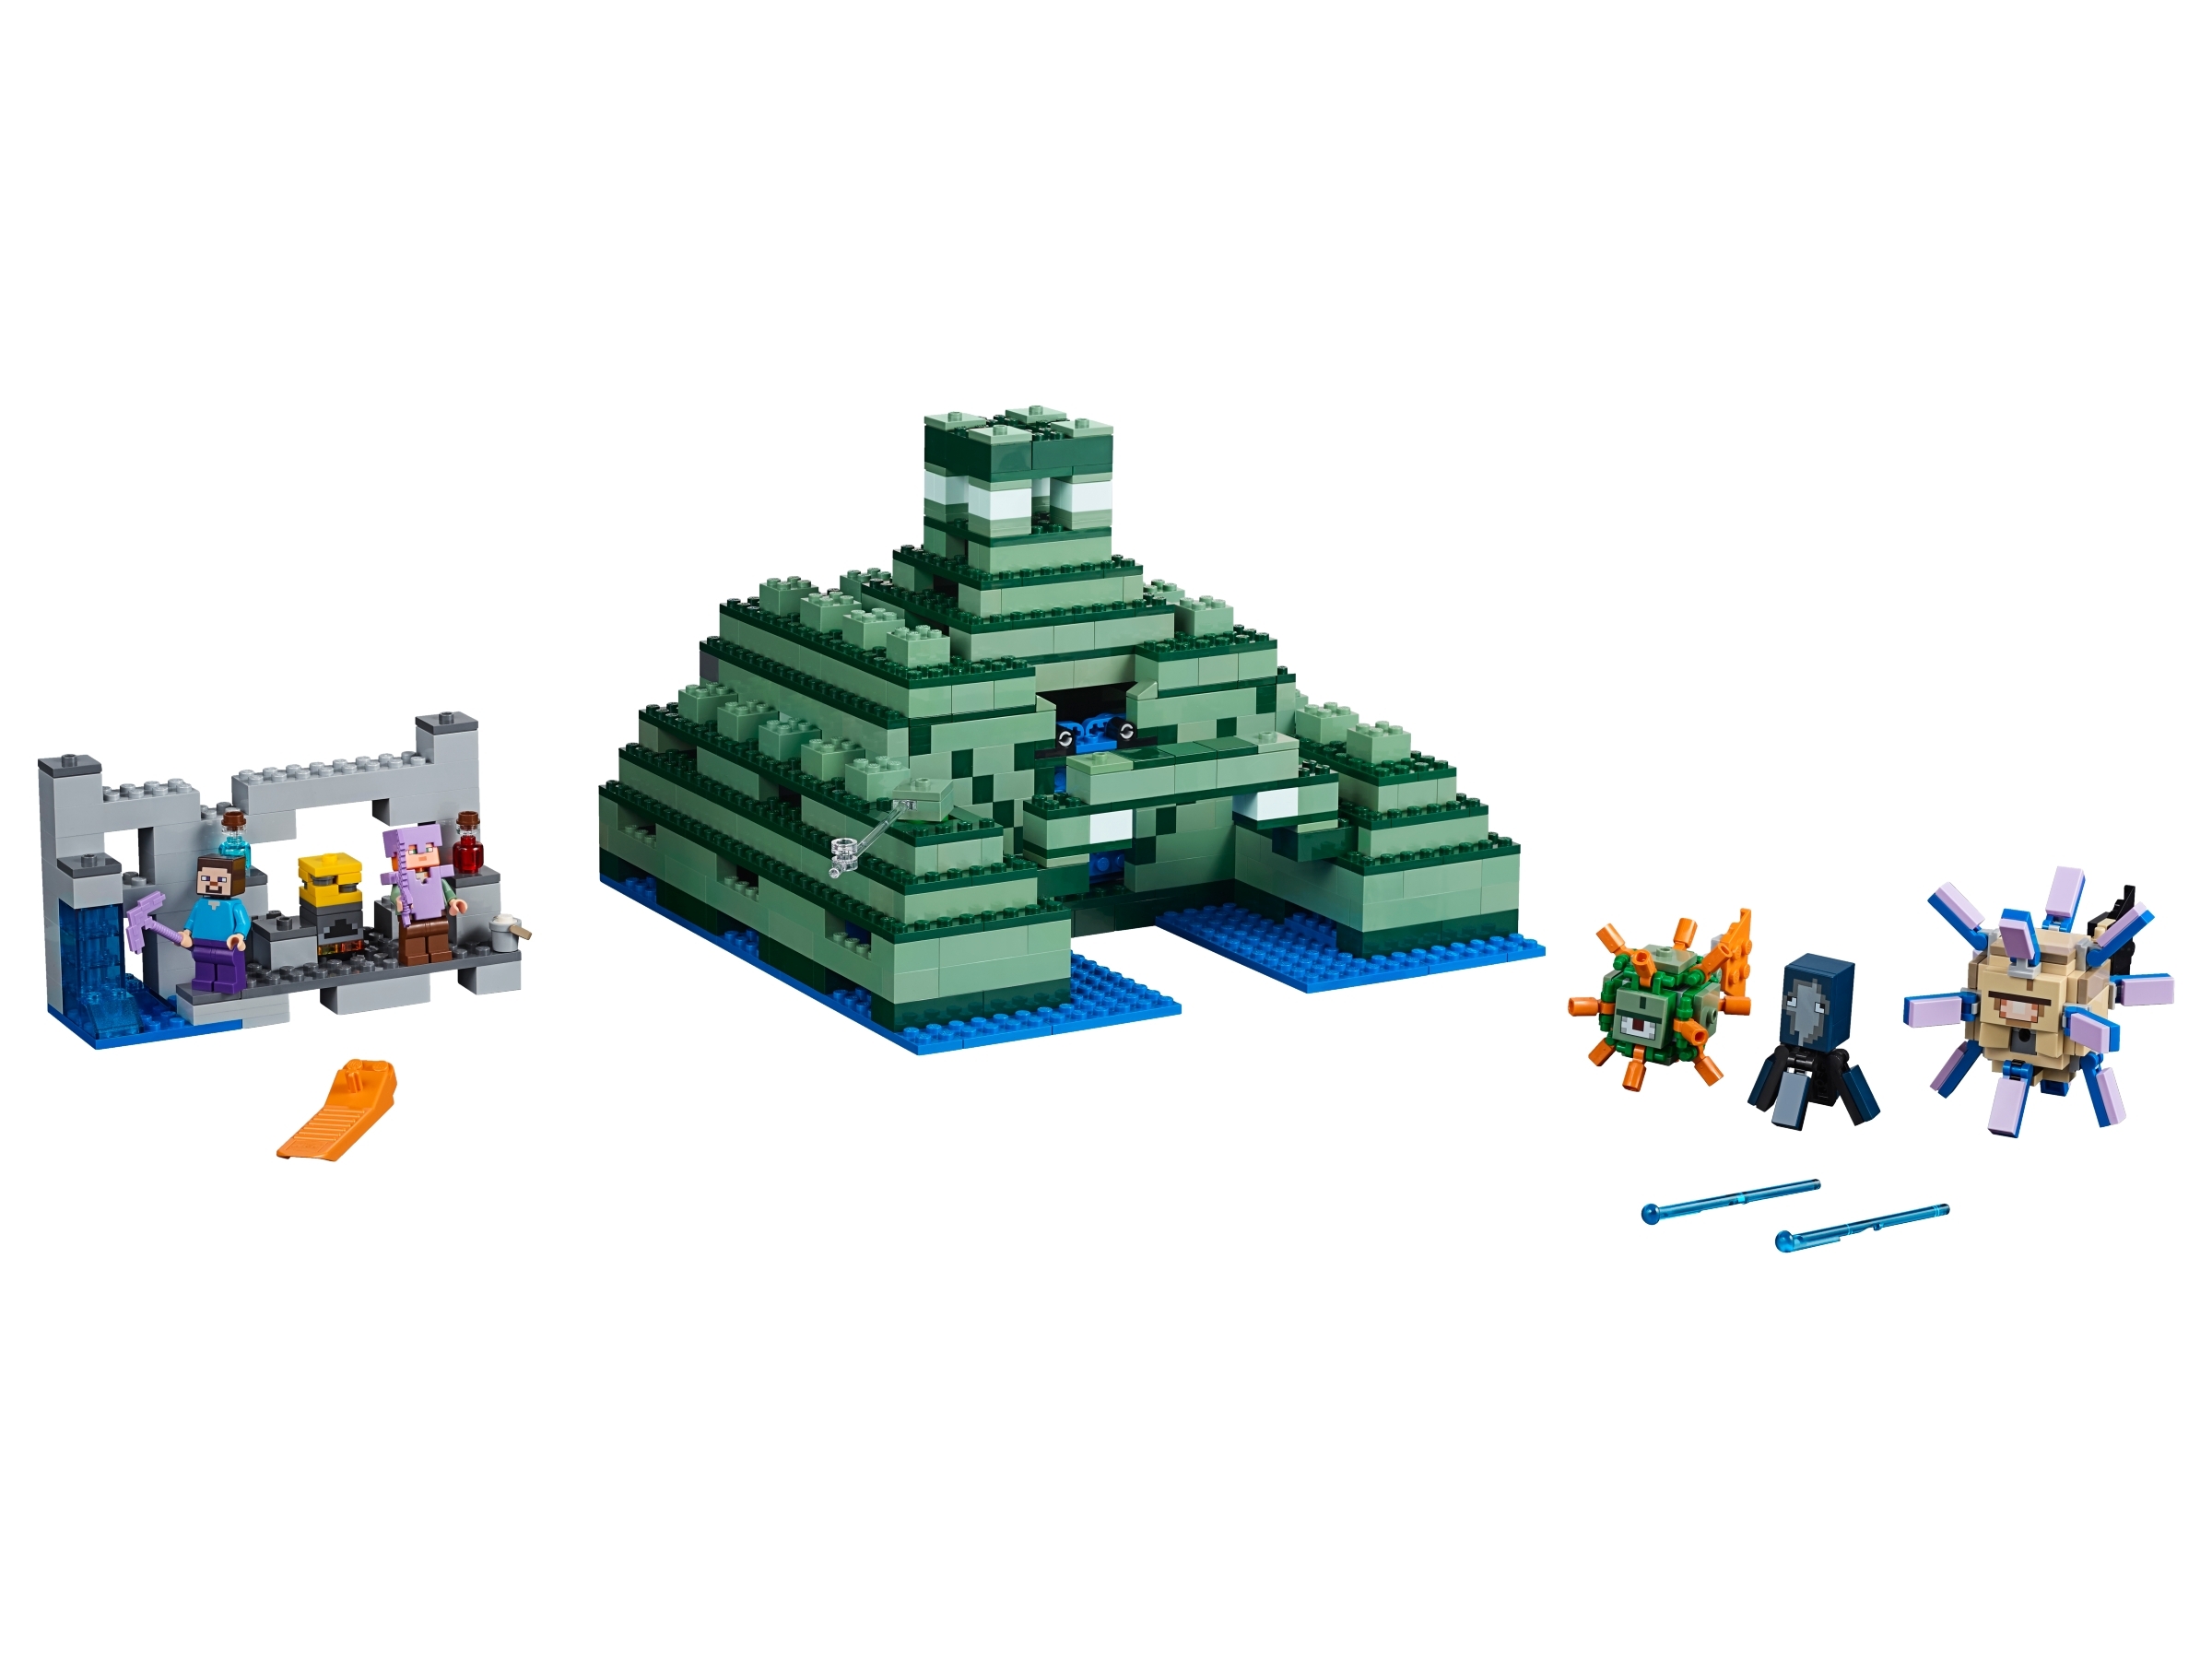 マインクラフト　レゴ　海底神殿　21136 その他 おもちゃ おもちゃ・ホビー・グッズ 新品